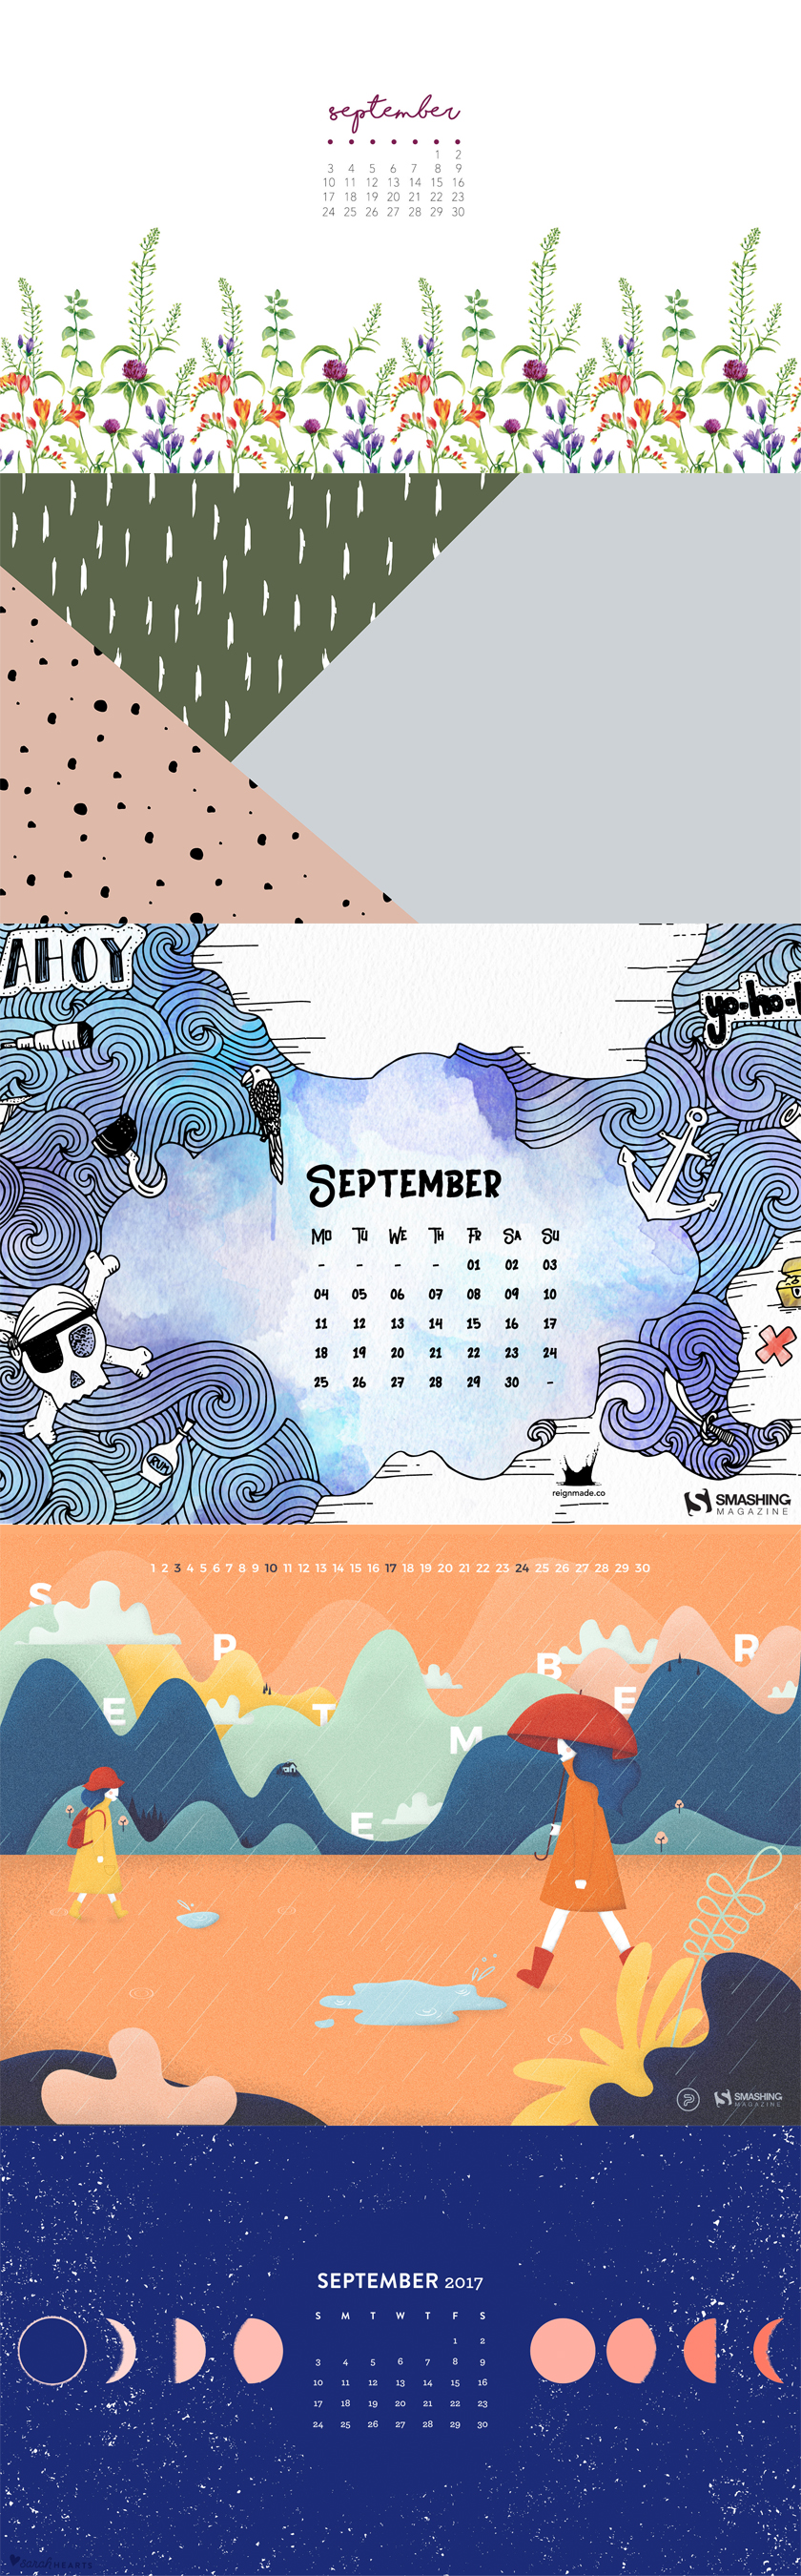 Free Desktop Wallpaper September 2017